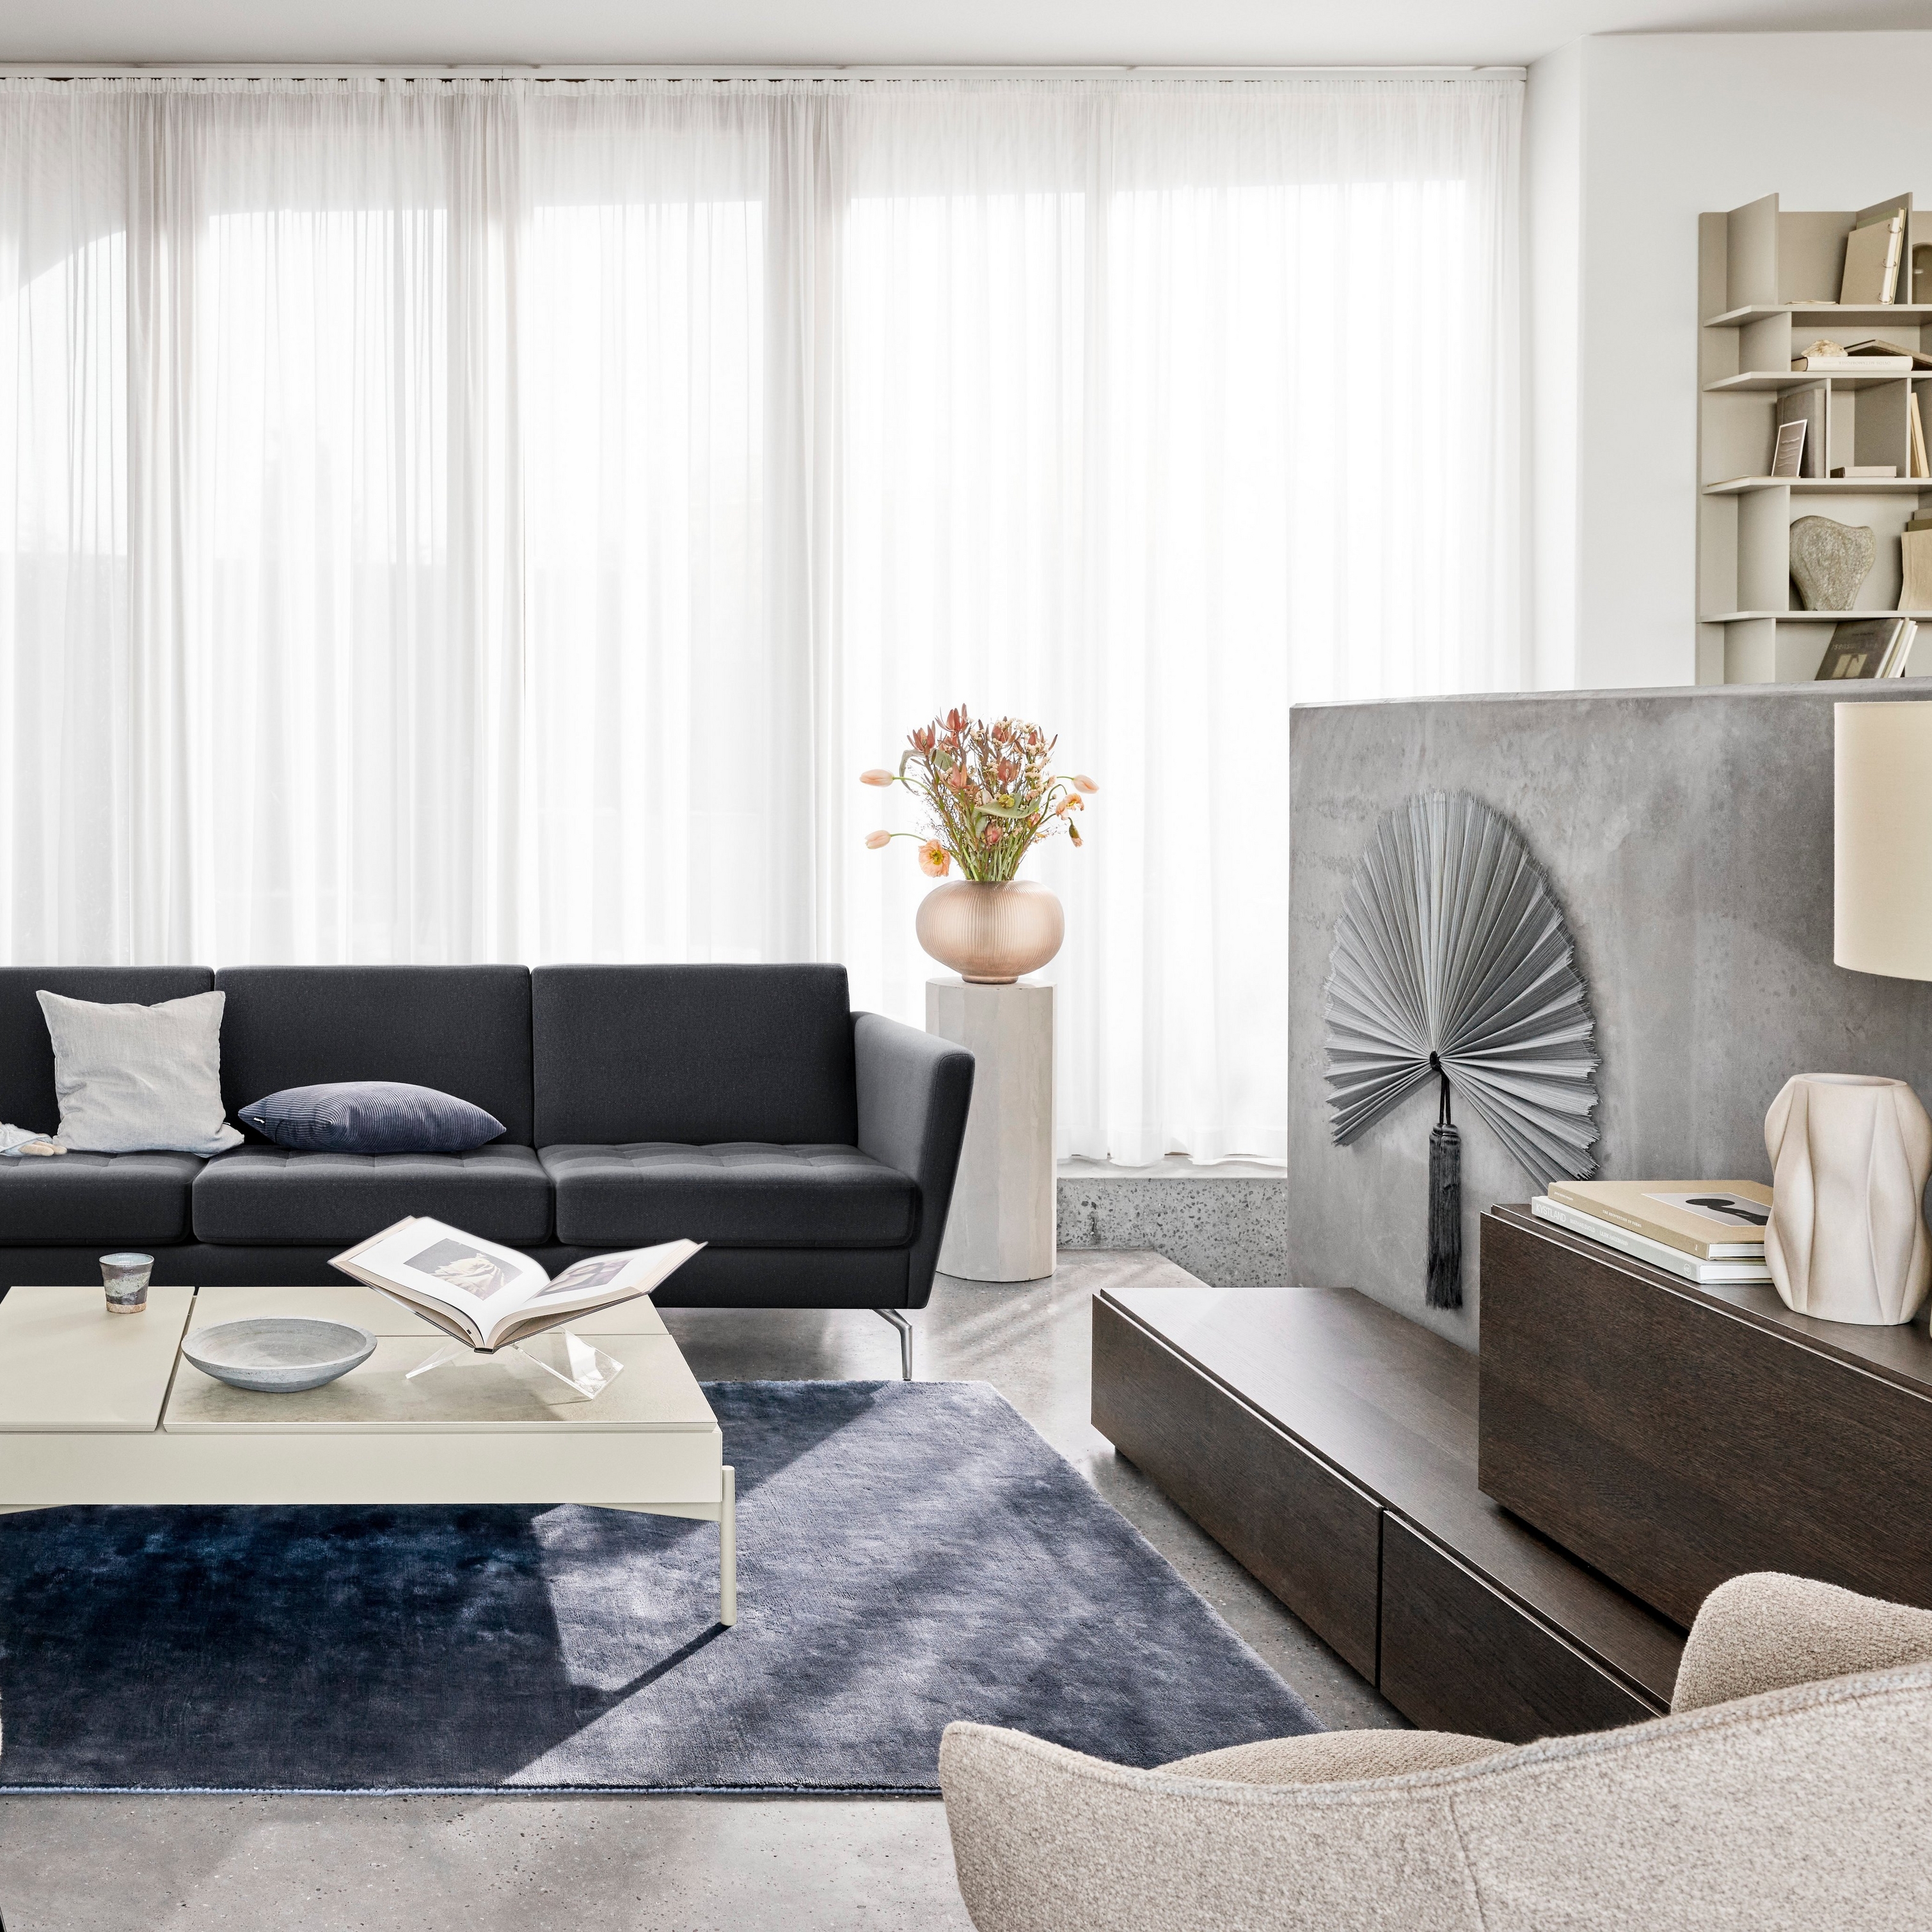 ブラックのソファ、チェア、透け感のあるカーテン、装飾品を配置したモダンなリビングスペース。